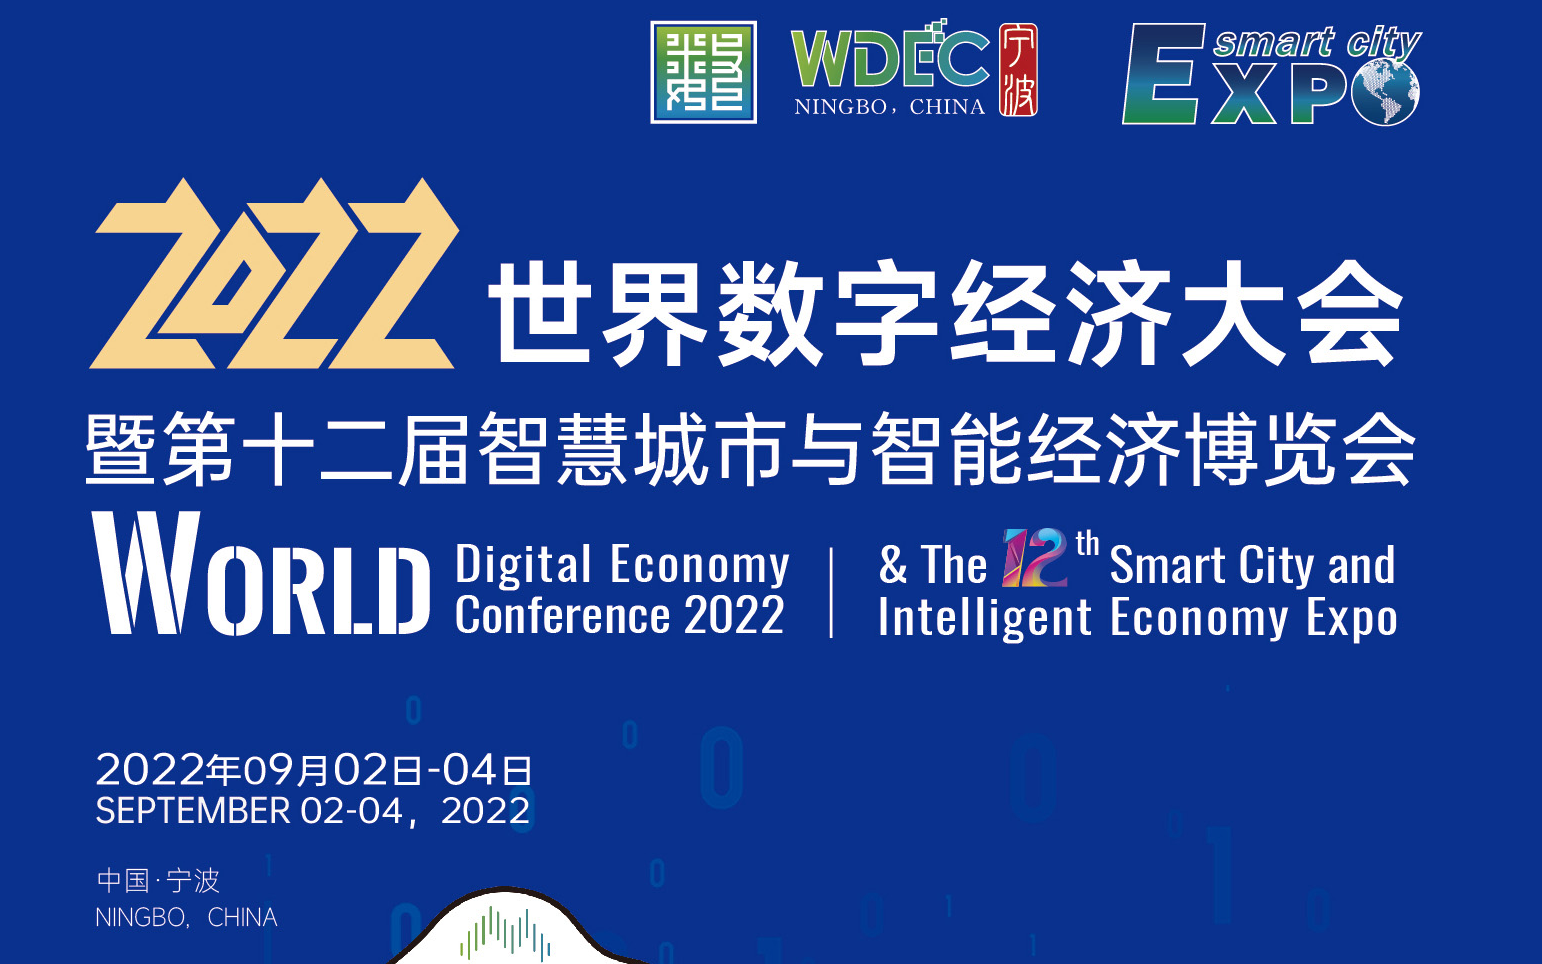 2022世界数字经济大会 暨第十二届智慧城市与智能经济博览会